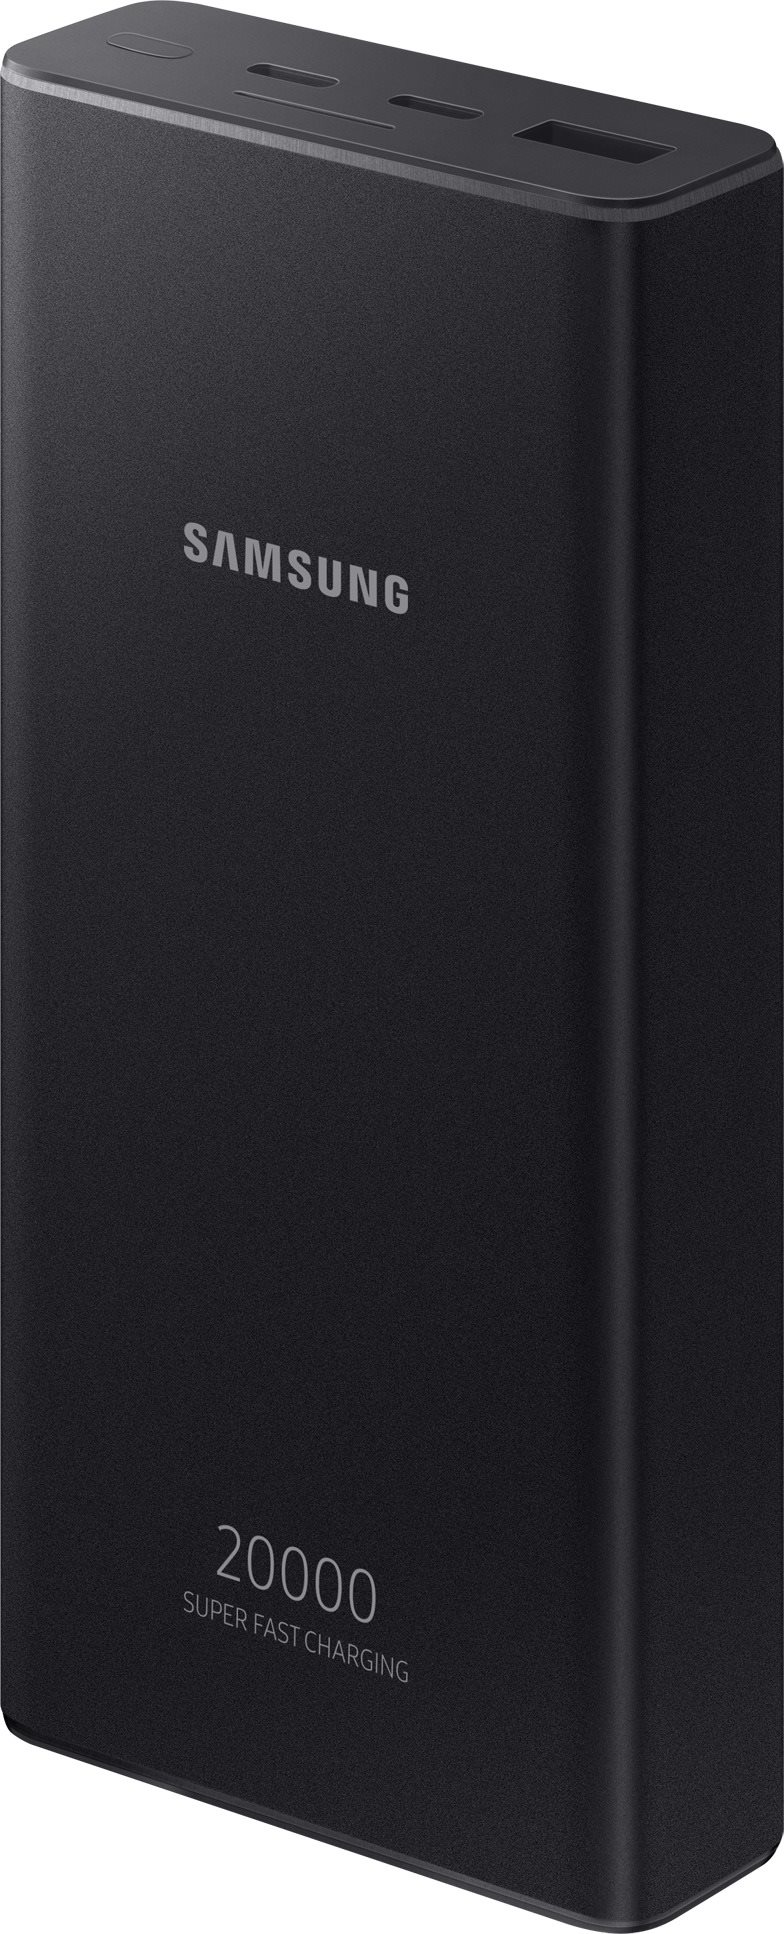 Samsung Powerbank 20000mAh USB-C-vel sötétszürke színben